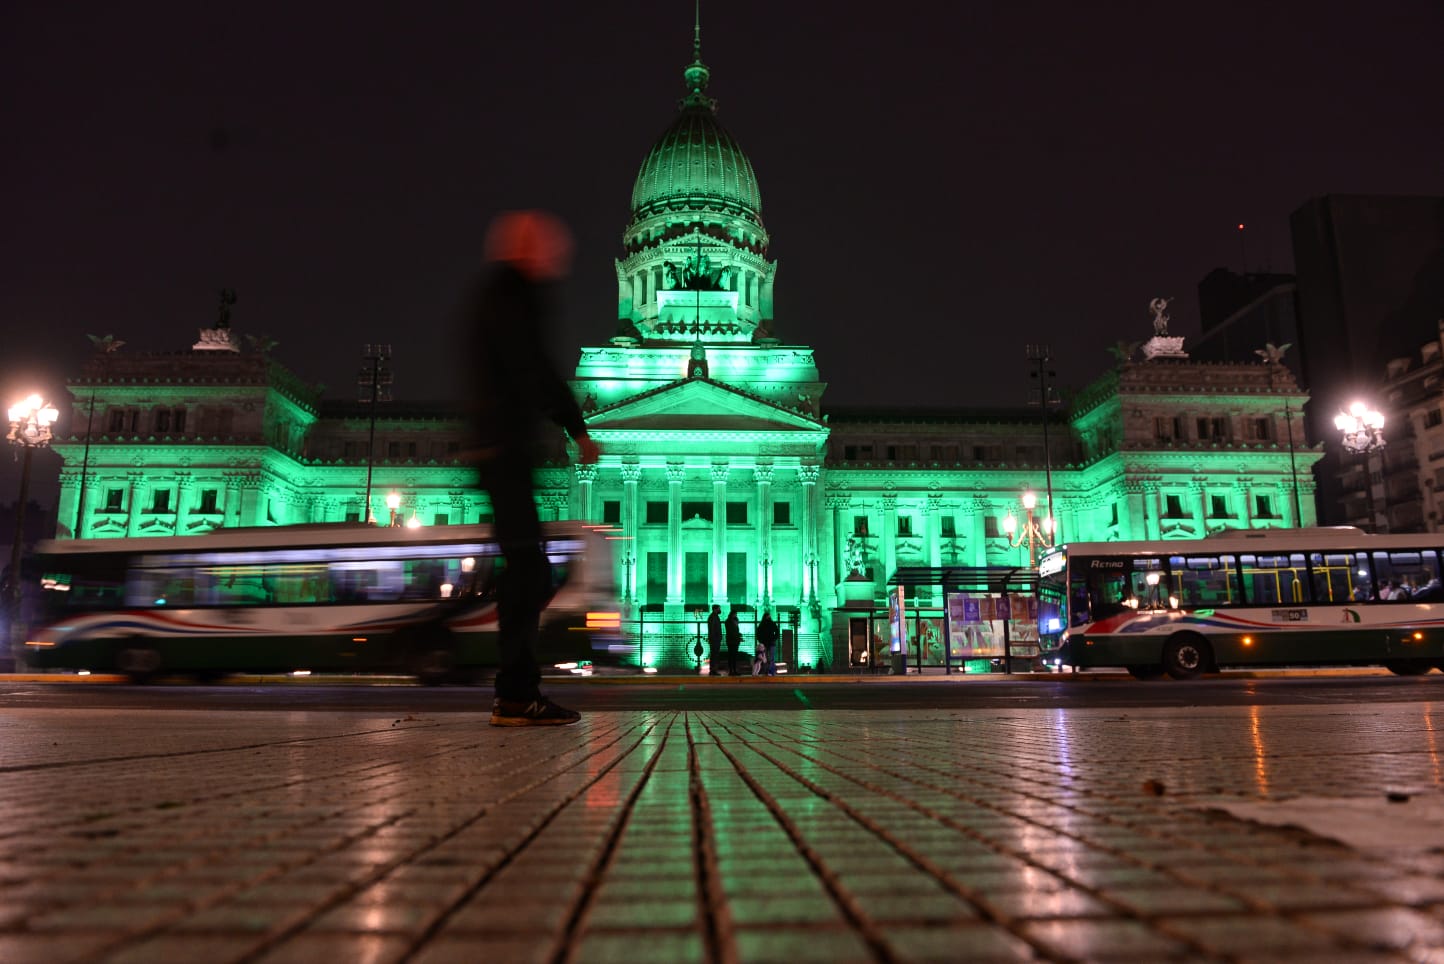 El Congreso se iluminó de verde para conmemorar el día mundial del Ambiente